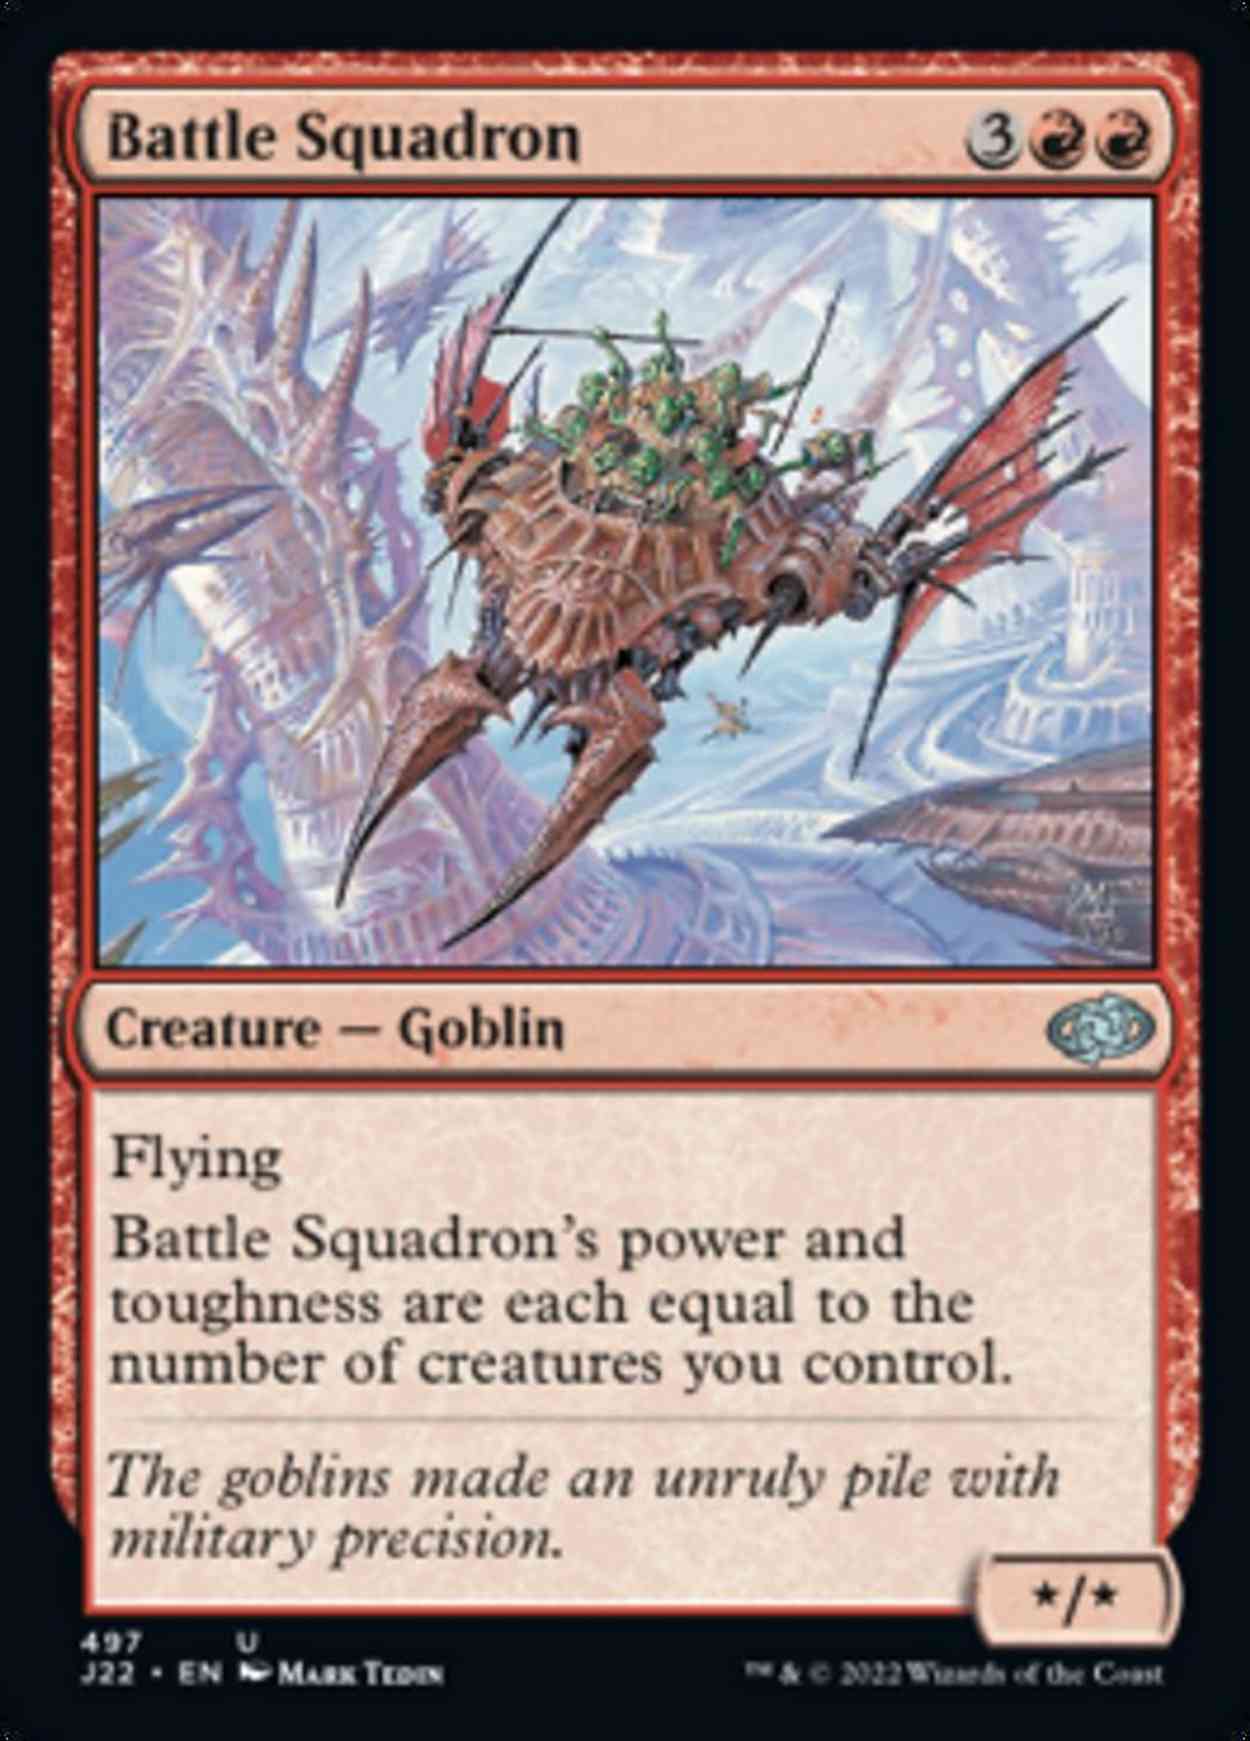 Battle Squadron magic card front